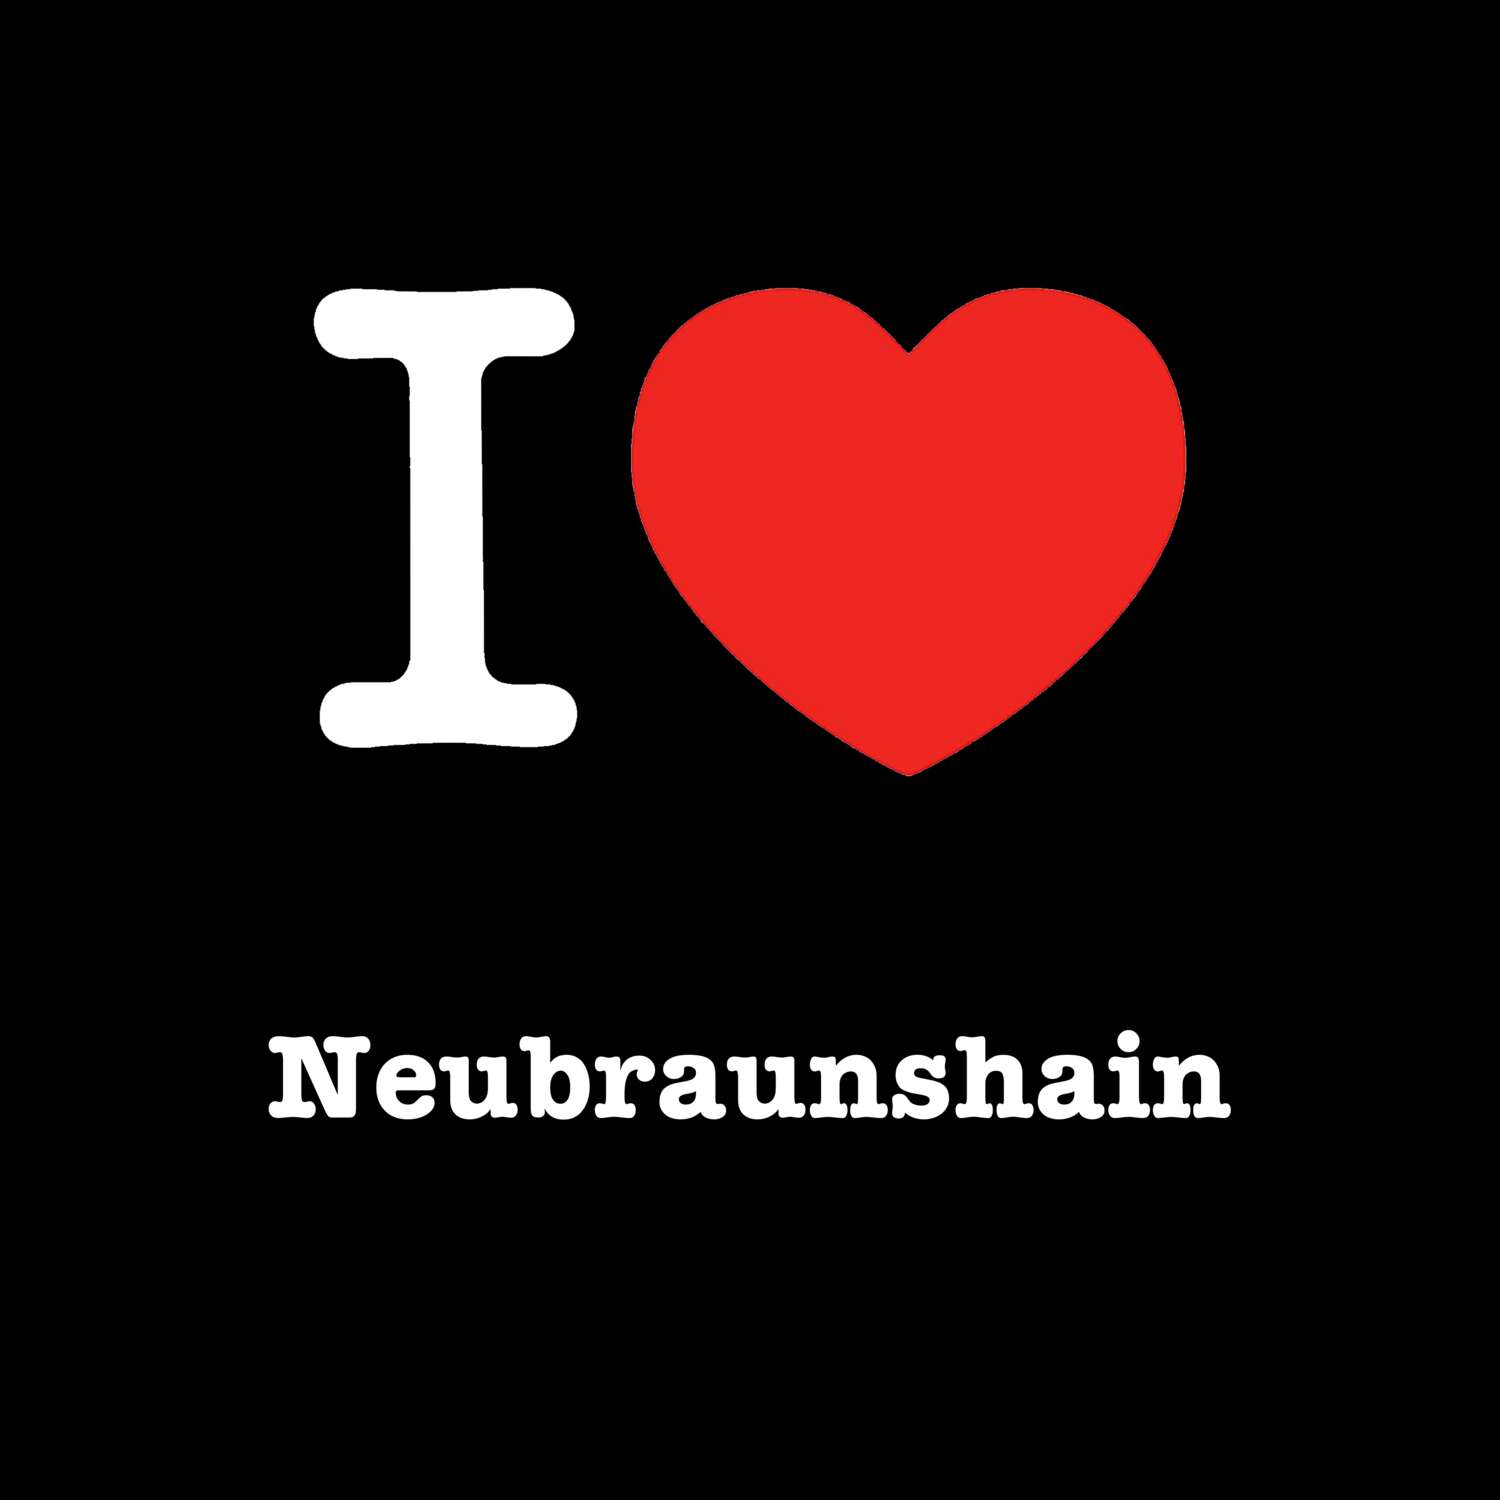 Neubraunshain T-Shirt »I love«